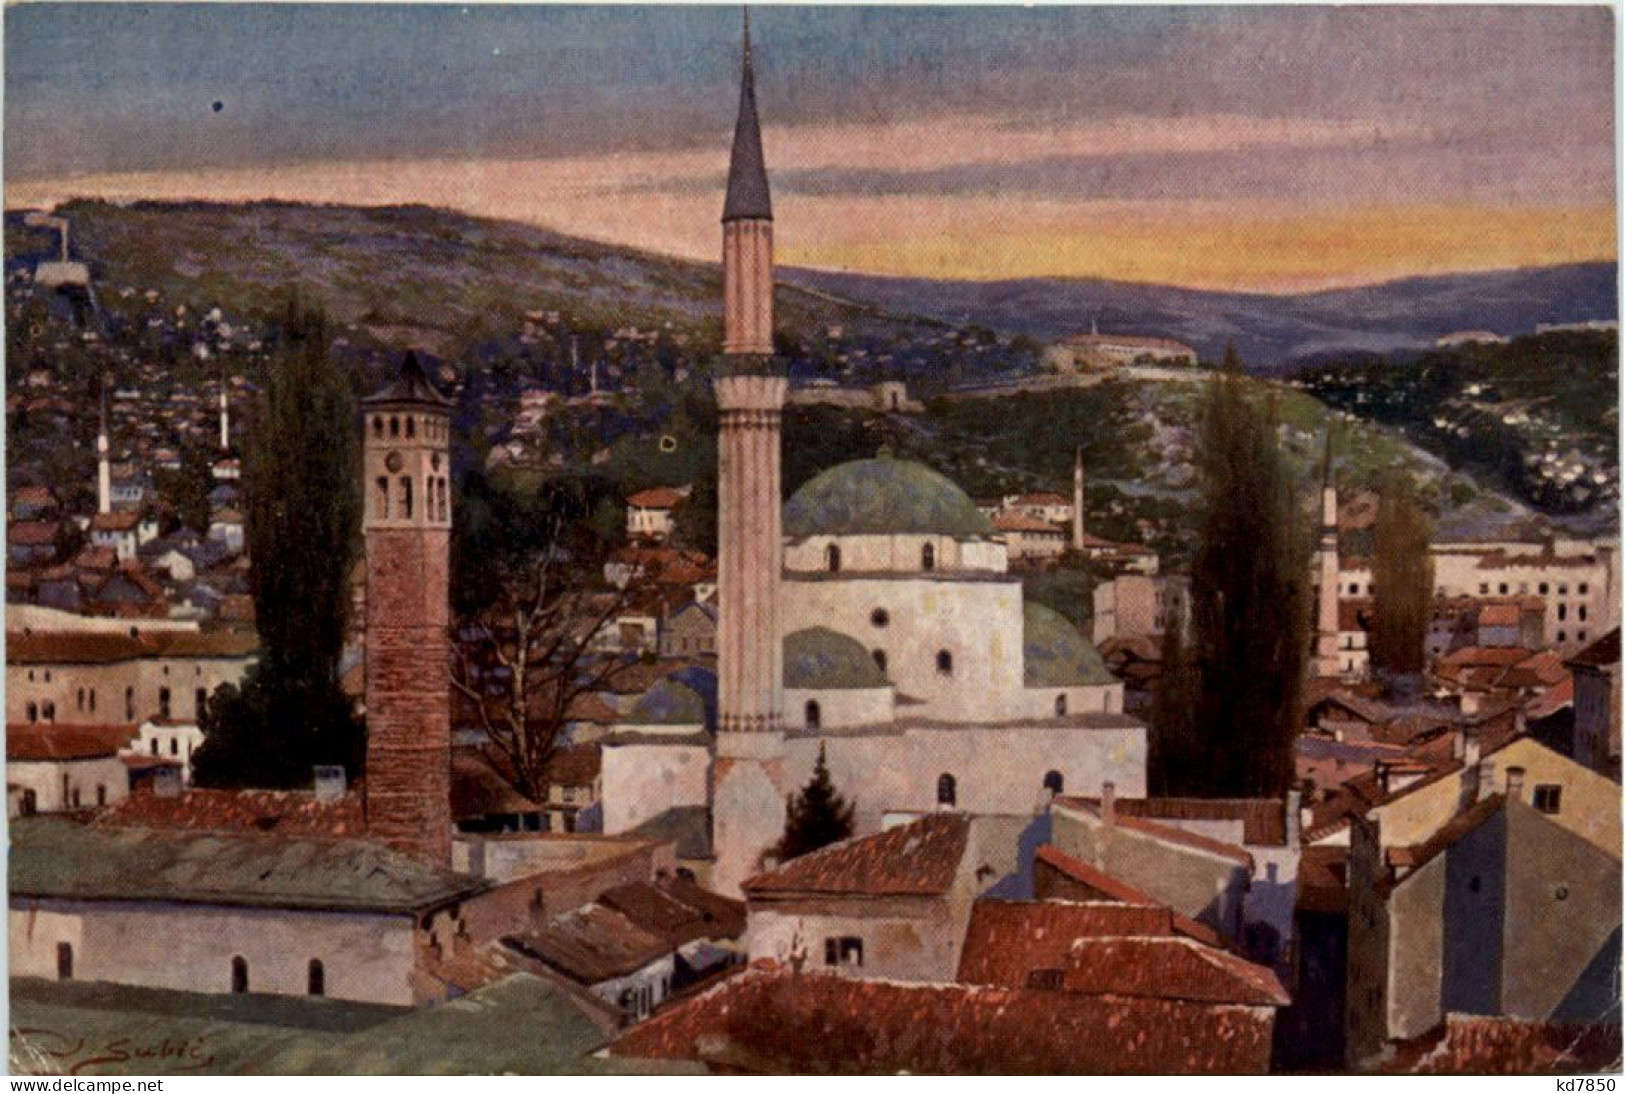 Sarajevo - Begova Moschee - Bosnia Erzegovina